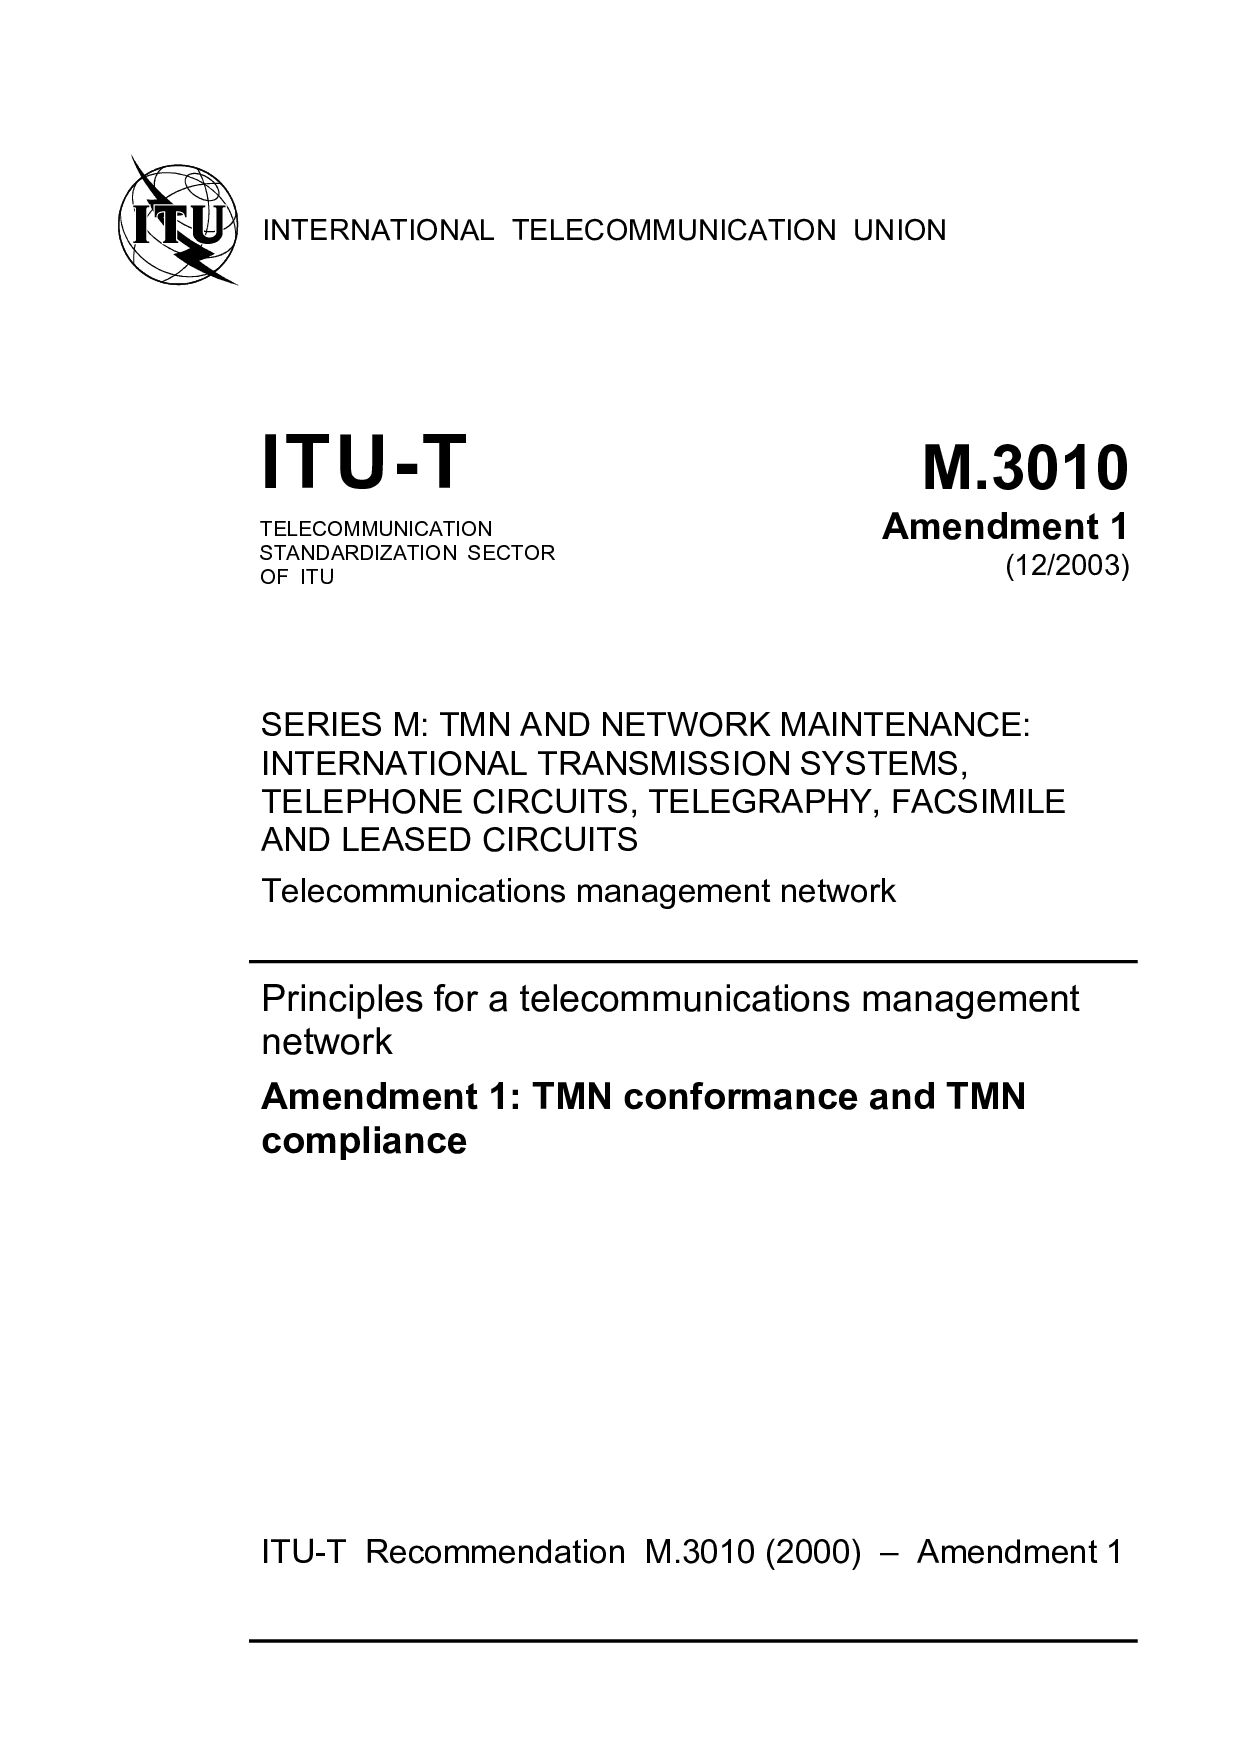 ITU-T M.3010 AMD 1-2003